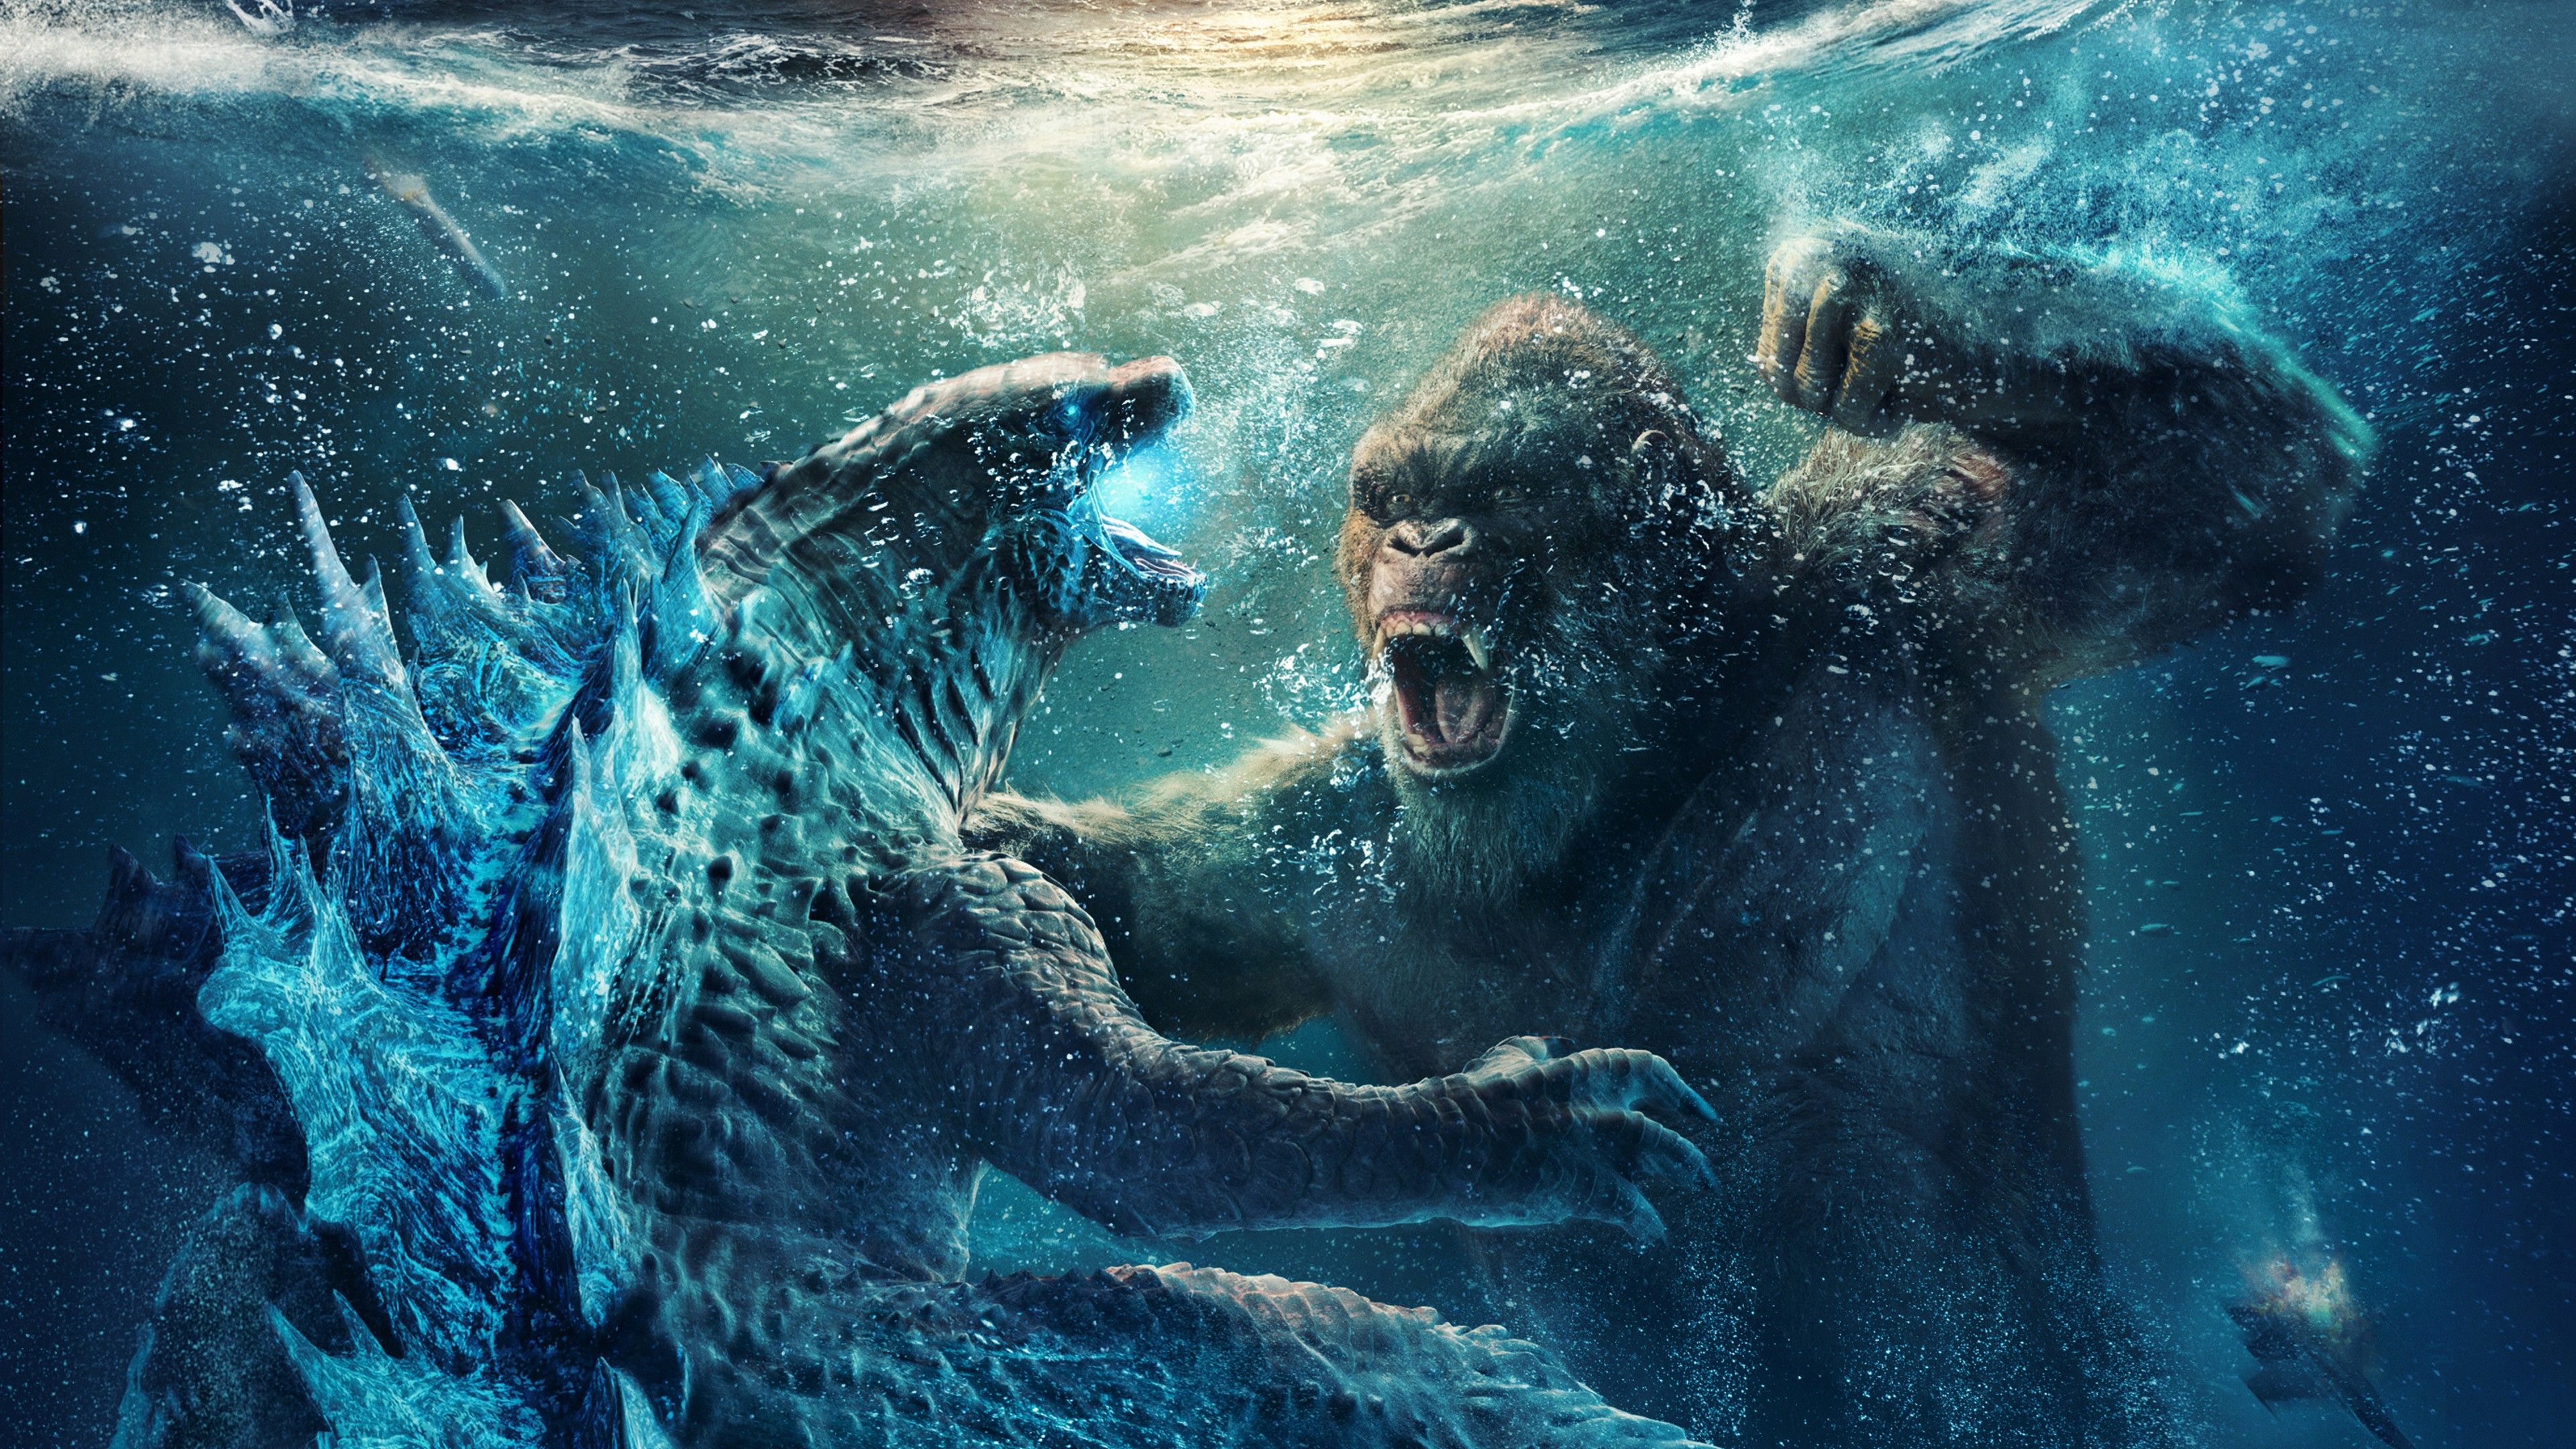 Godzilla vs Kong 4K Wallpaper, 2021 Movies, Movies